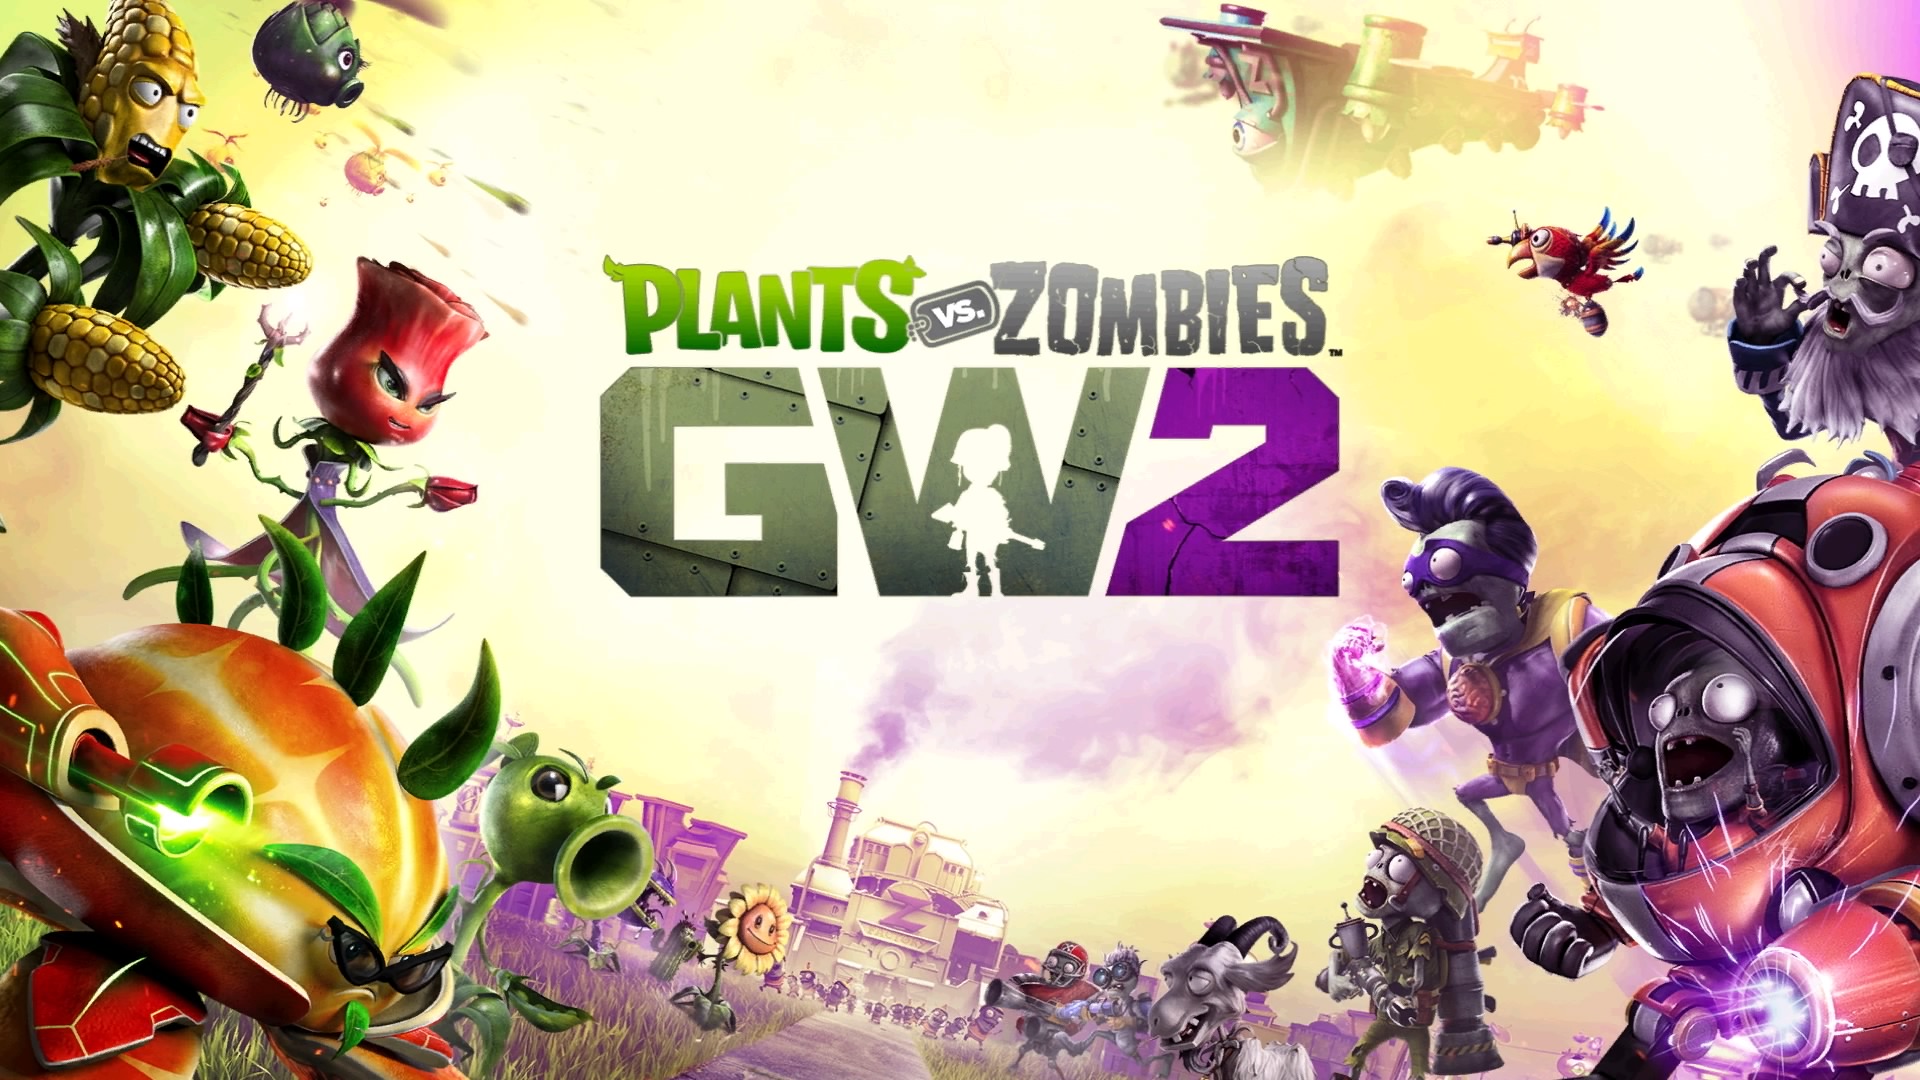 ps4 plants vs zombies garden warfare